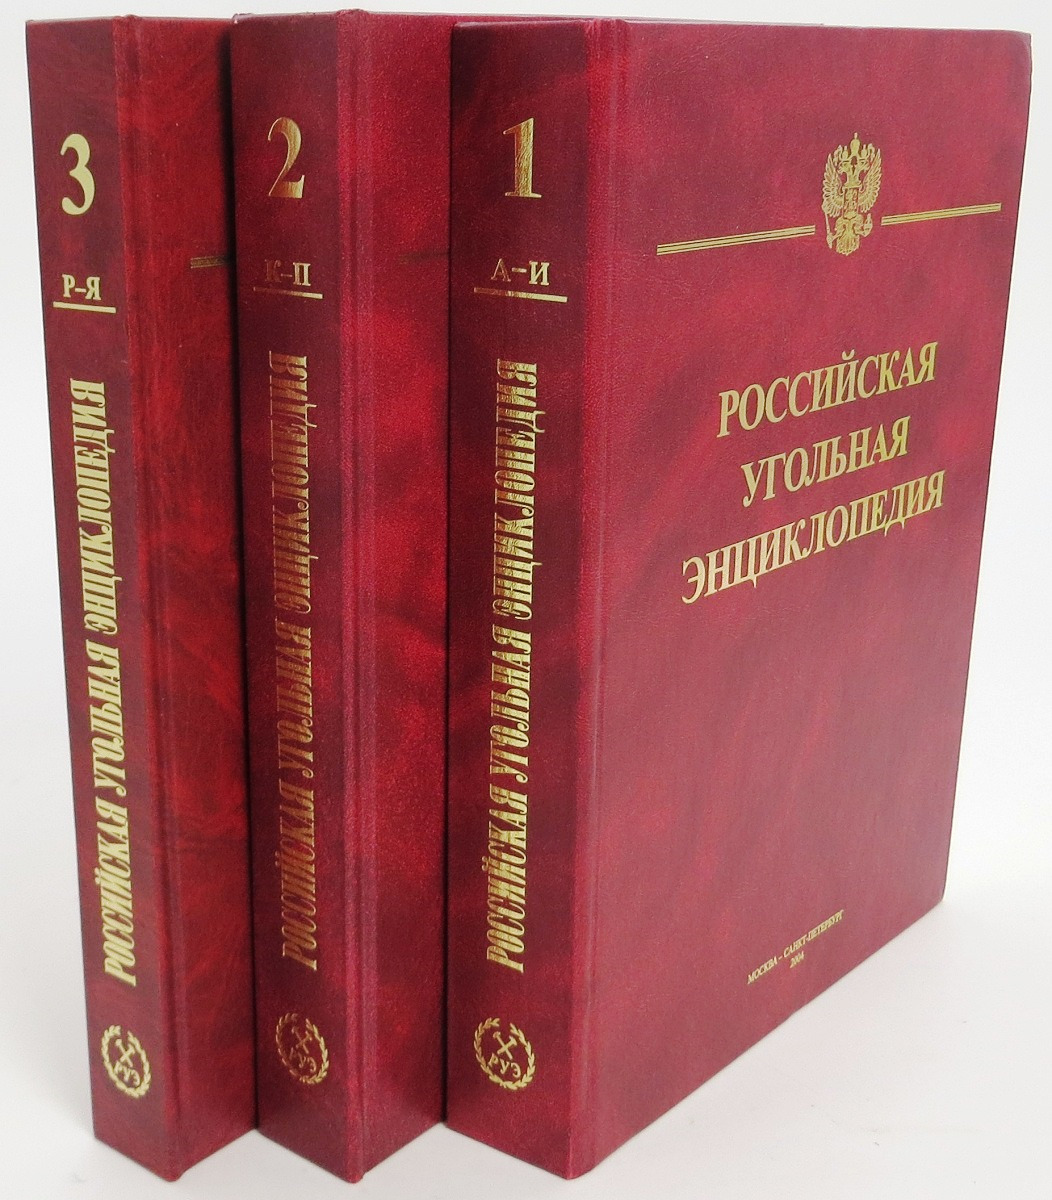 Российская угольная энциклопедия (комплект из 3 книг)